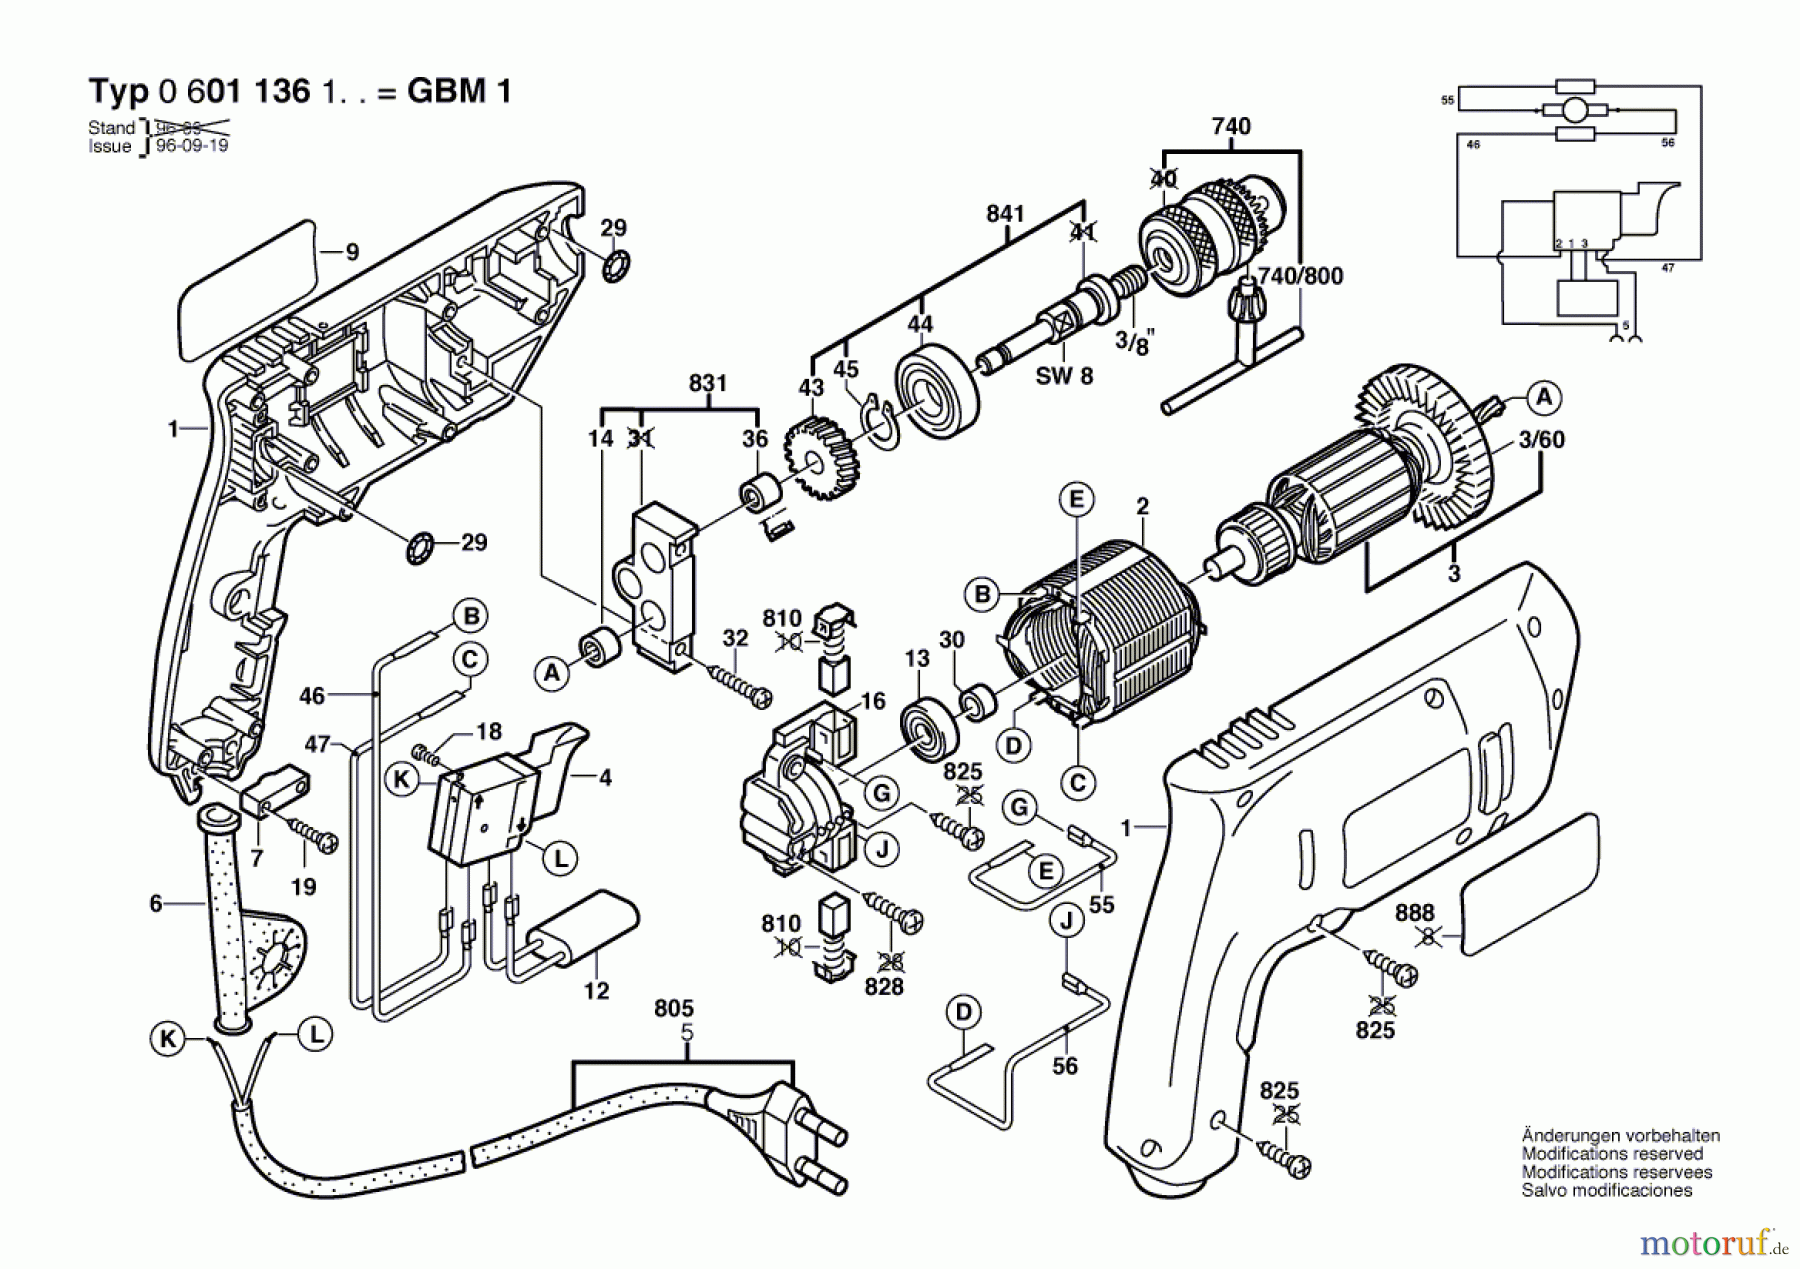  Bosch Werkzeug Bohrmaschine GBM 1 Seite 1